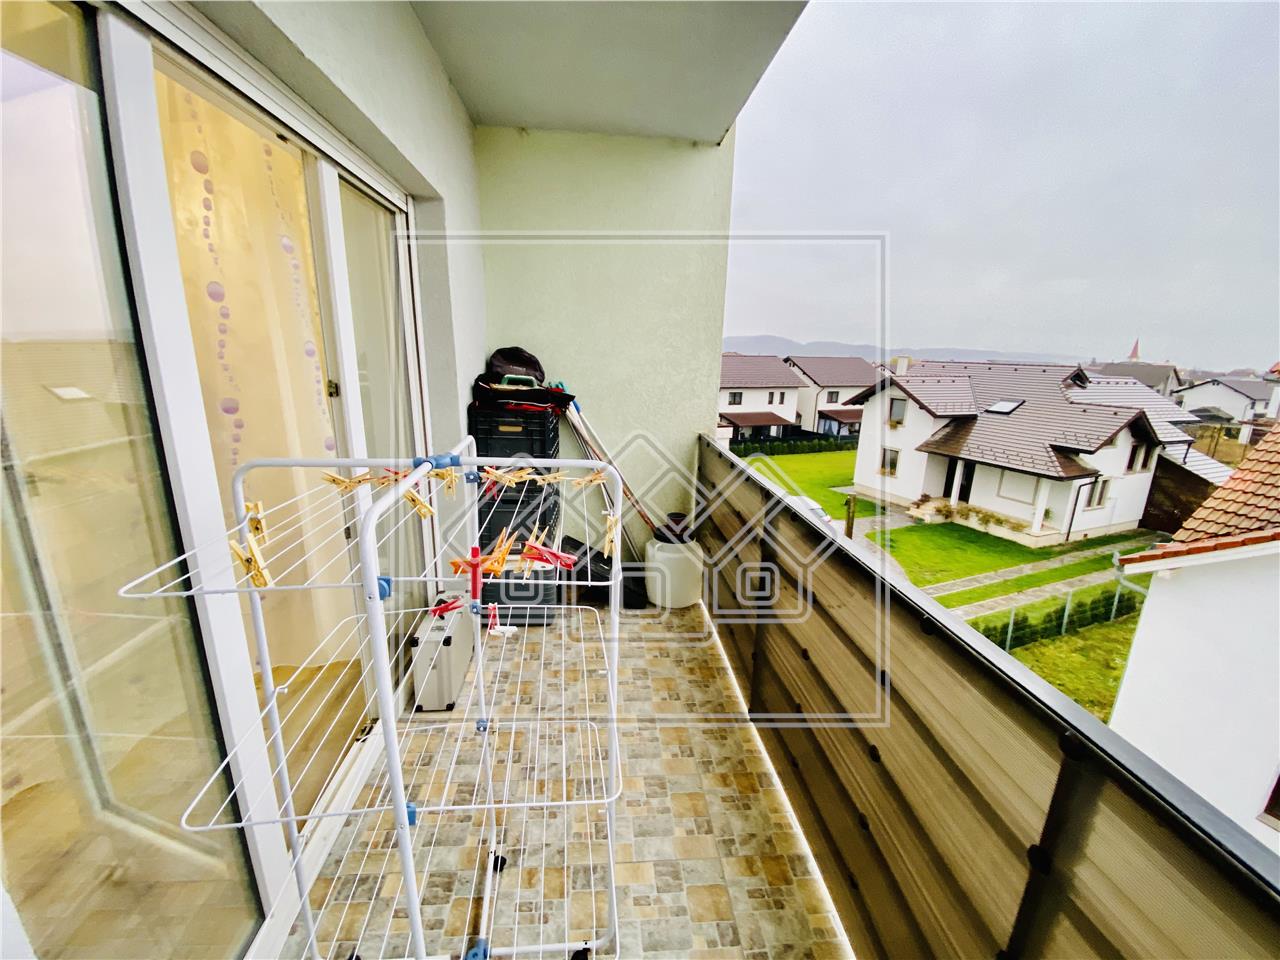 Wohnung zu verkaufen in Sibiu - 3 Zimmer mit Balkon - Zwischengeschoss